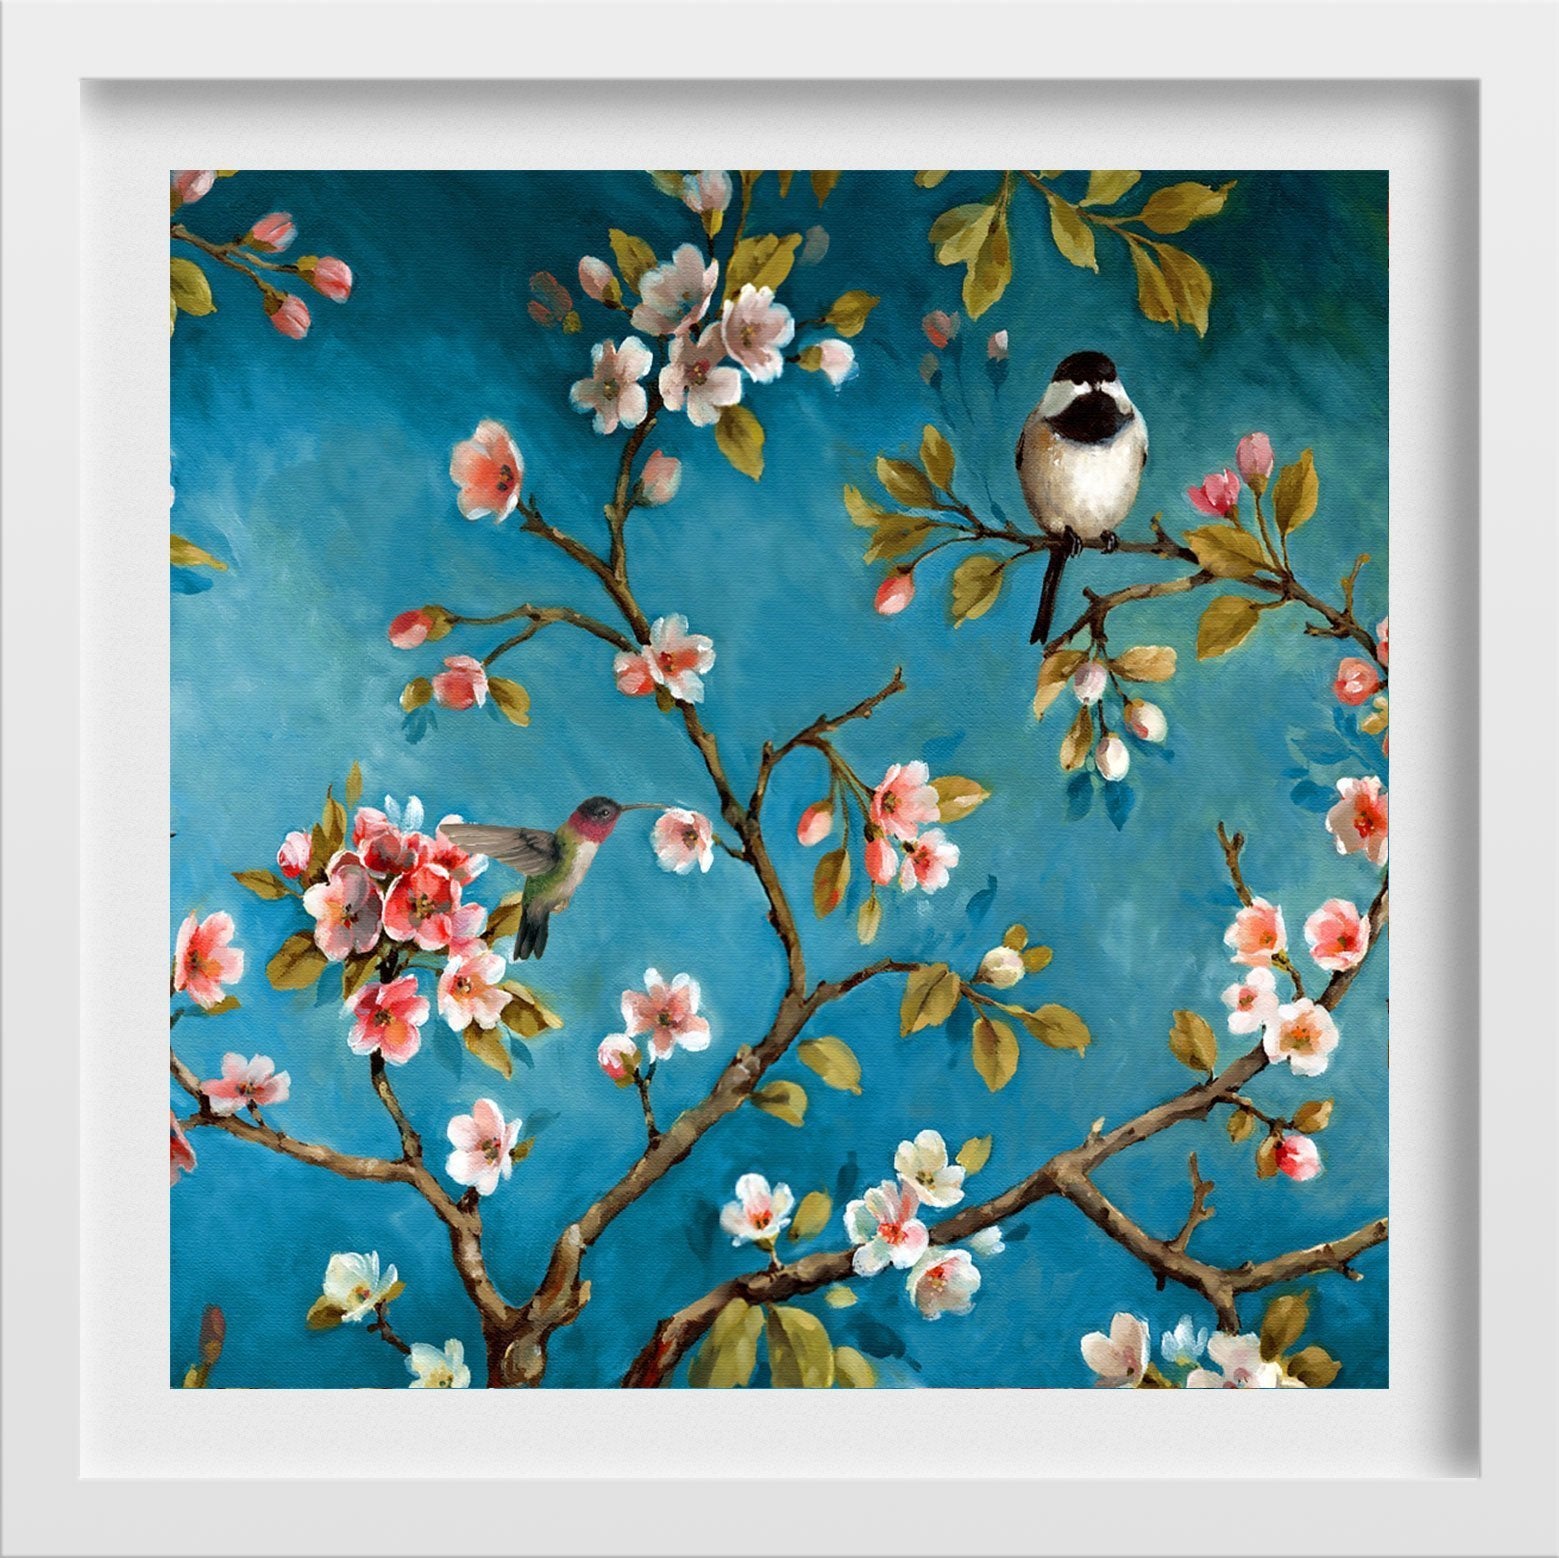 Humming bird and Groom Painting - Meri Deewar - MeriDeewar